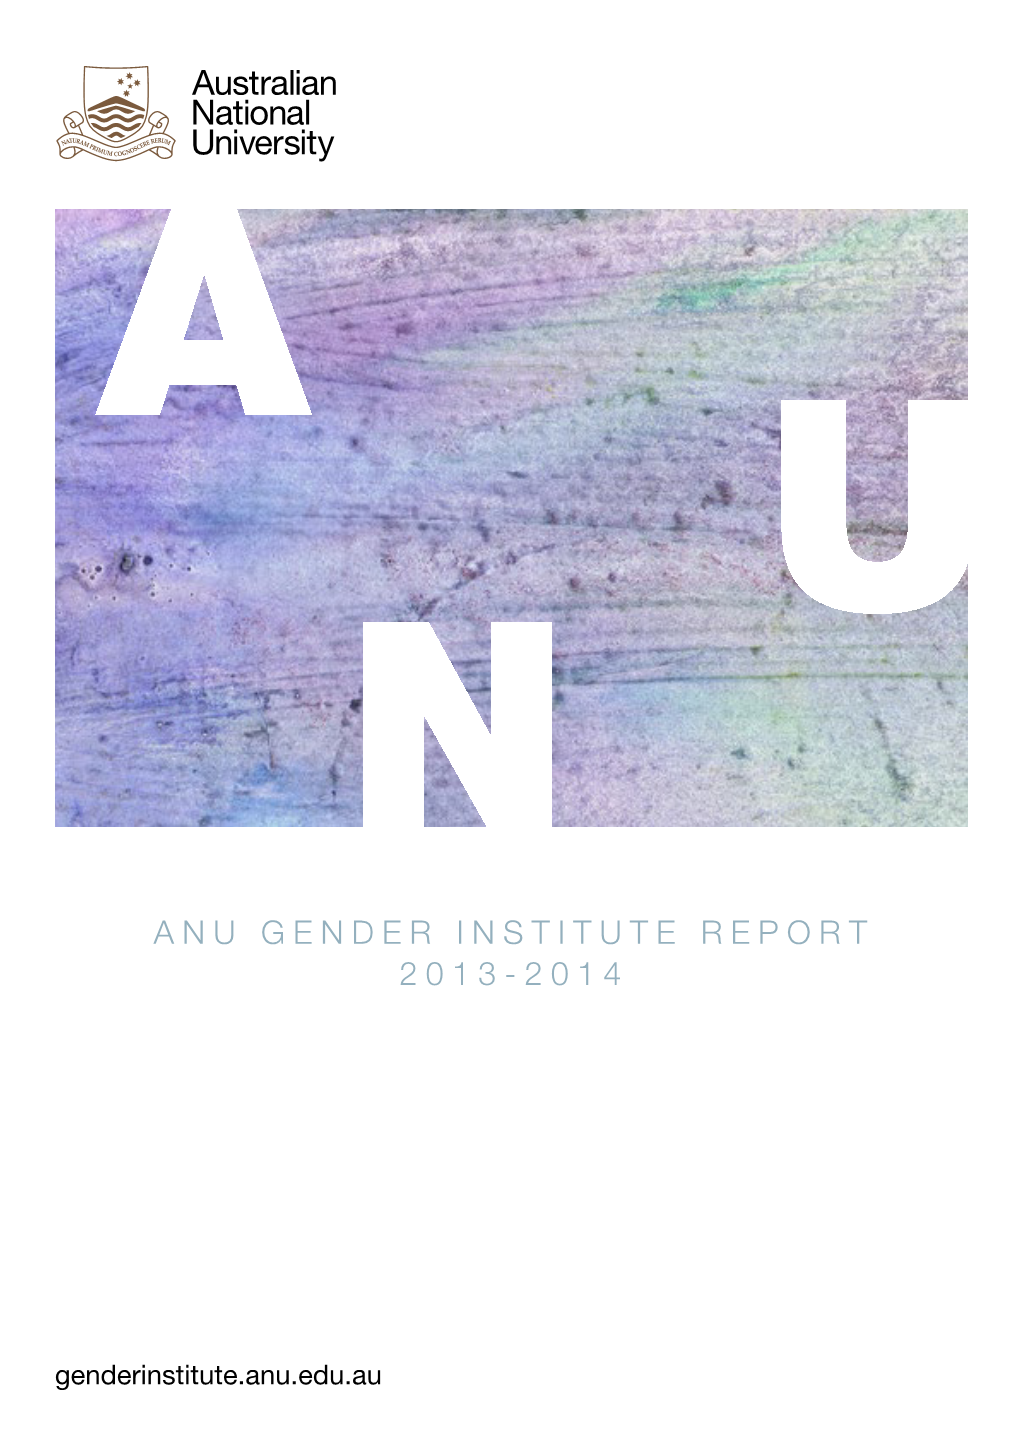 Anu Gender Institute Report 2013-2014